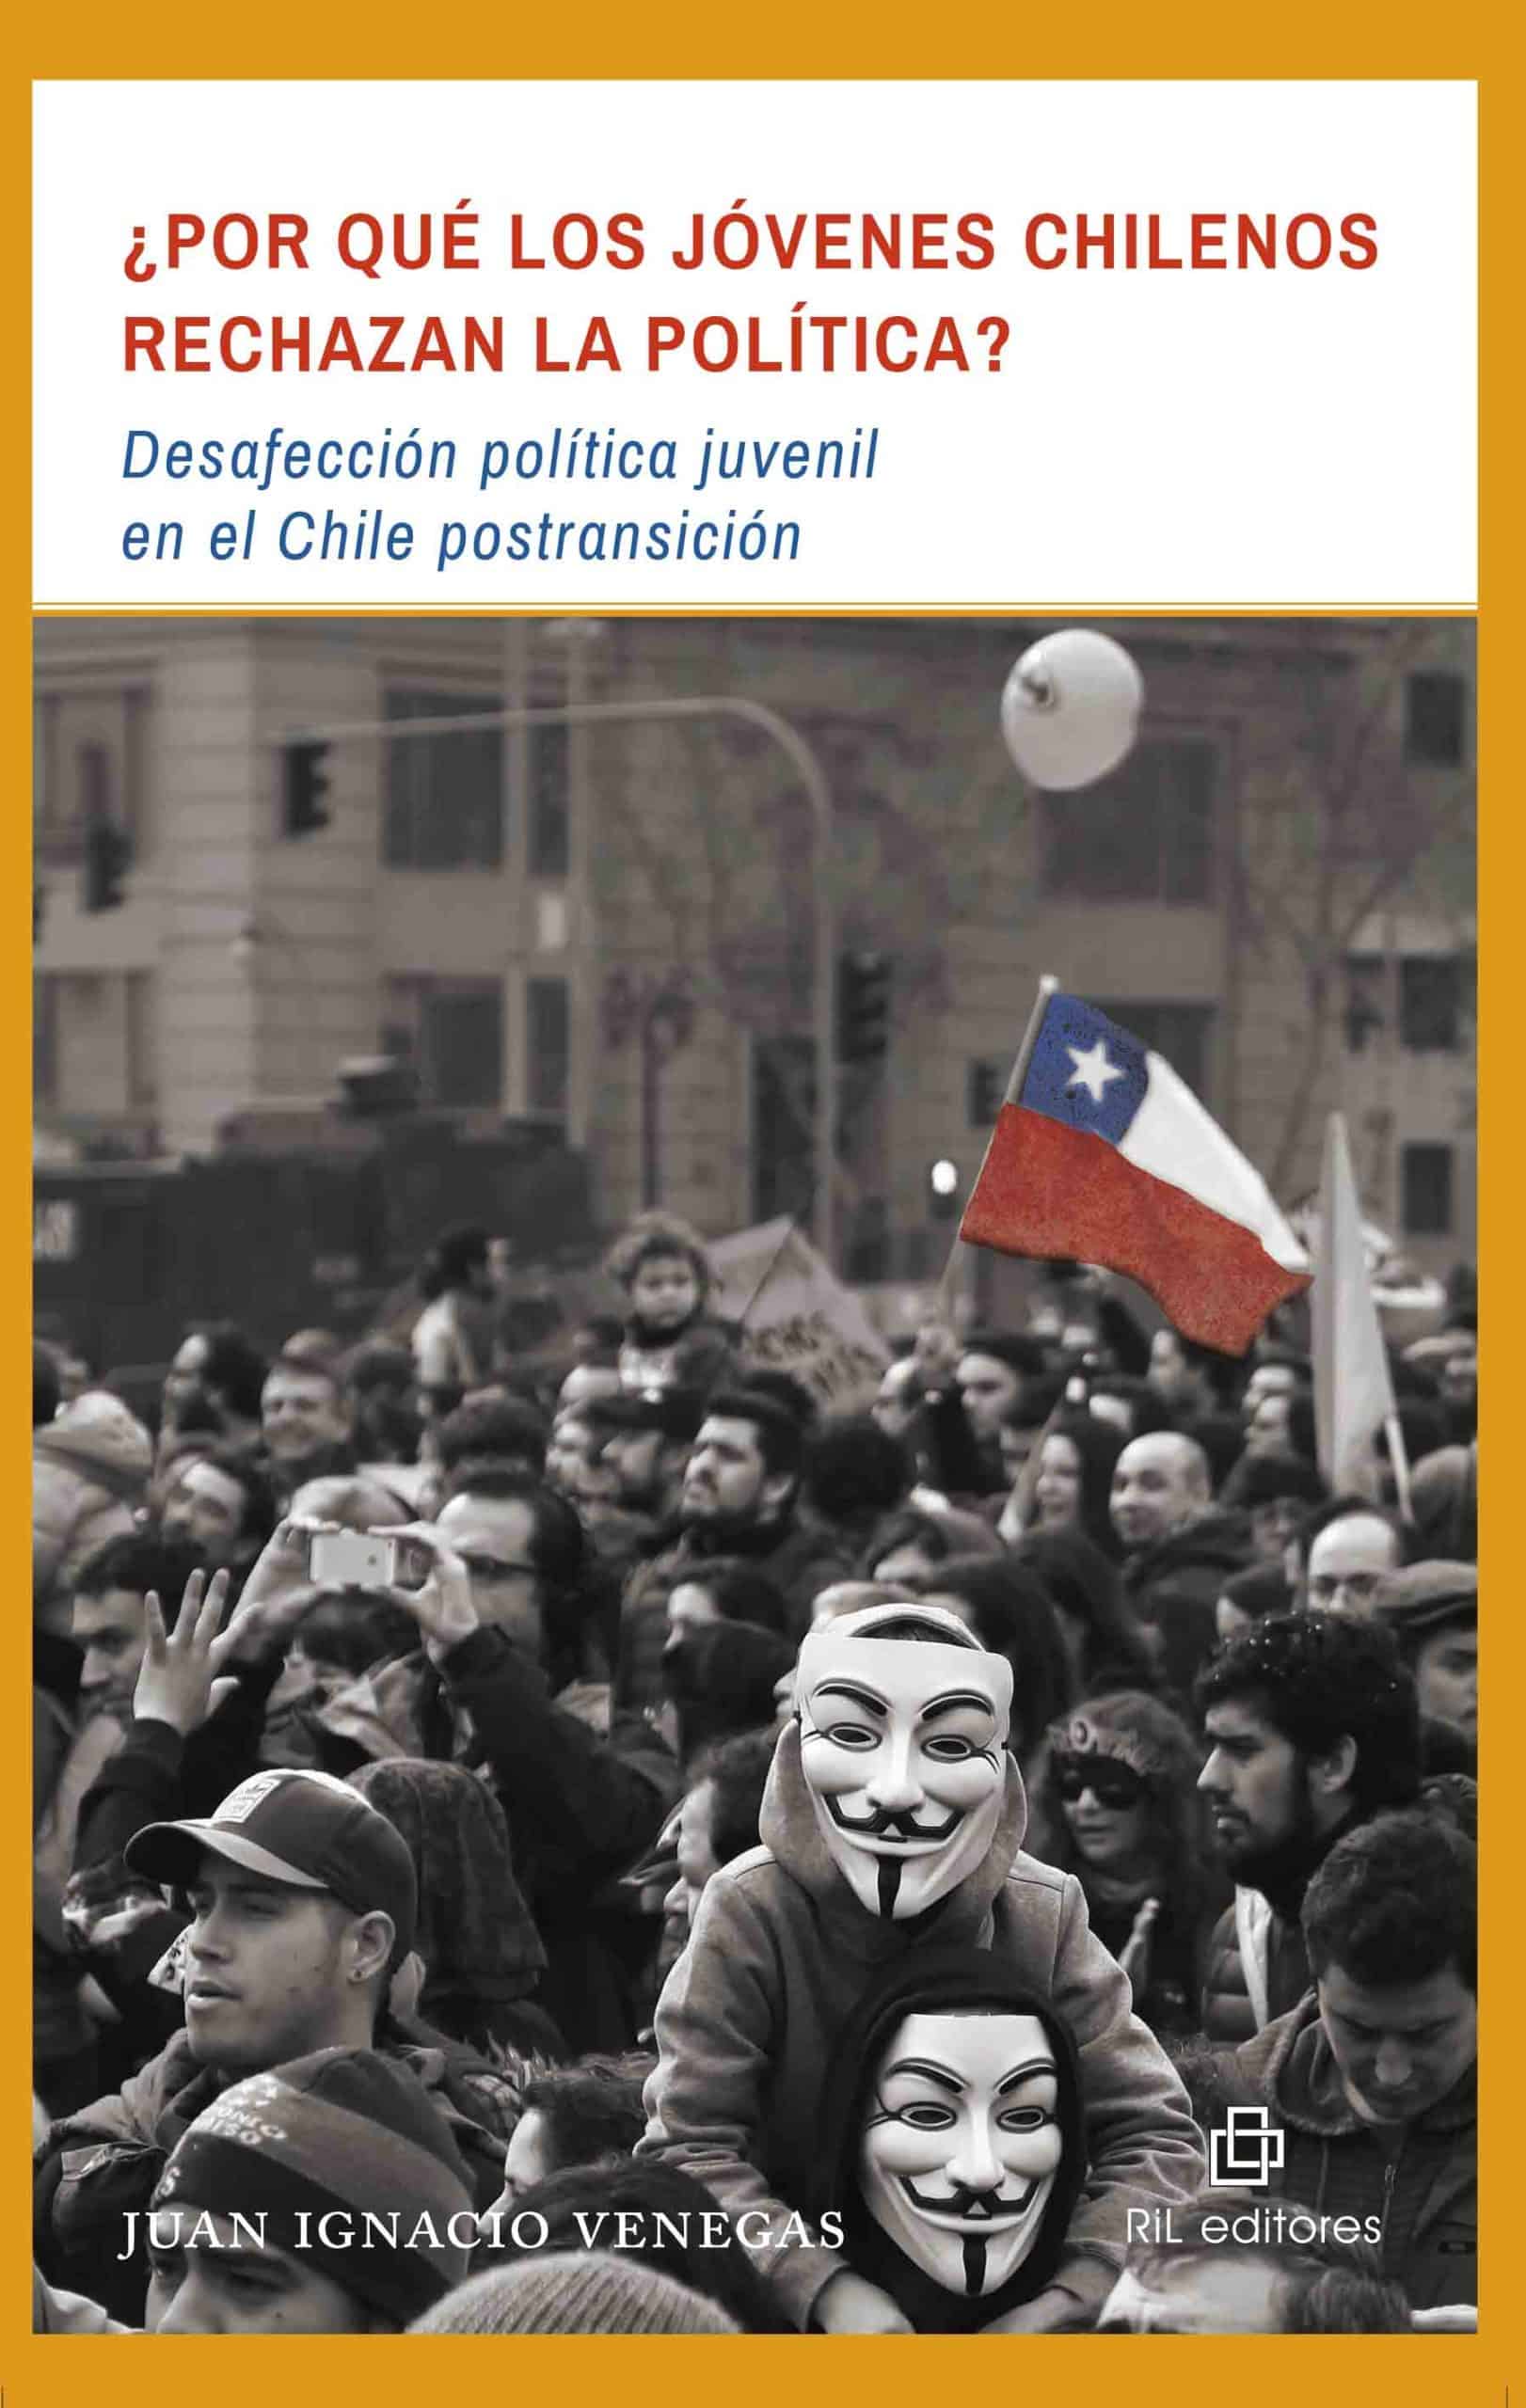 ¿Por qué los jóvenes chilenos rechazan la política? Desafección política juvenil en el Chile postransición 1